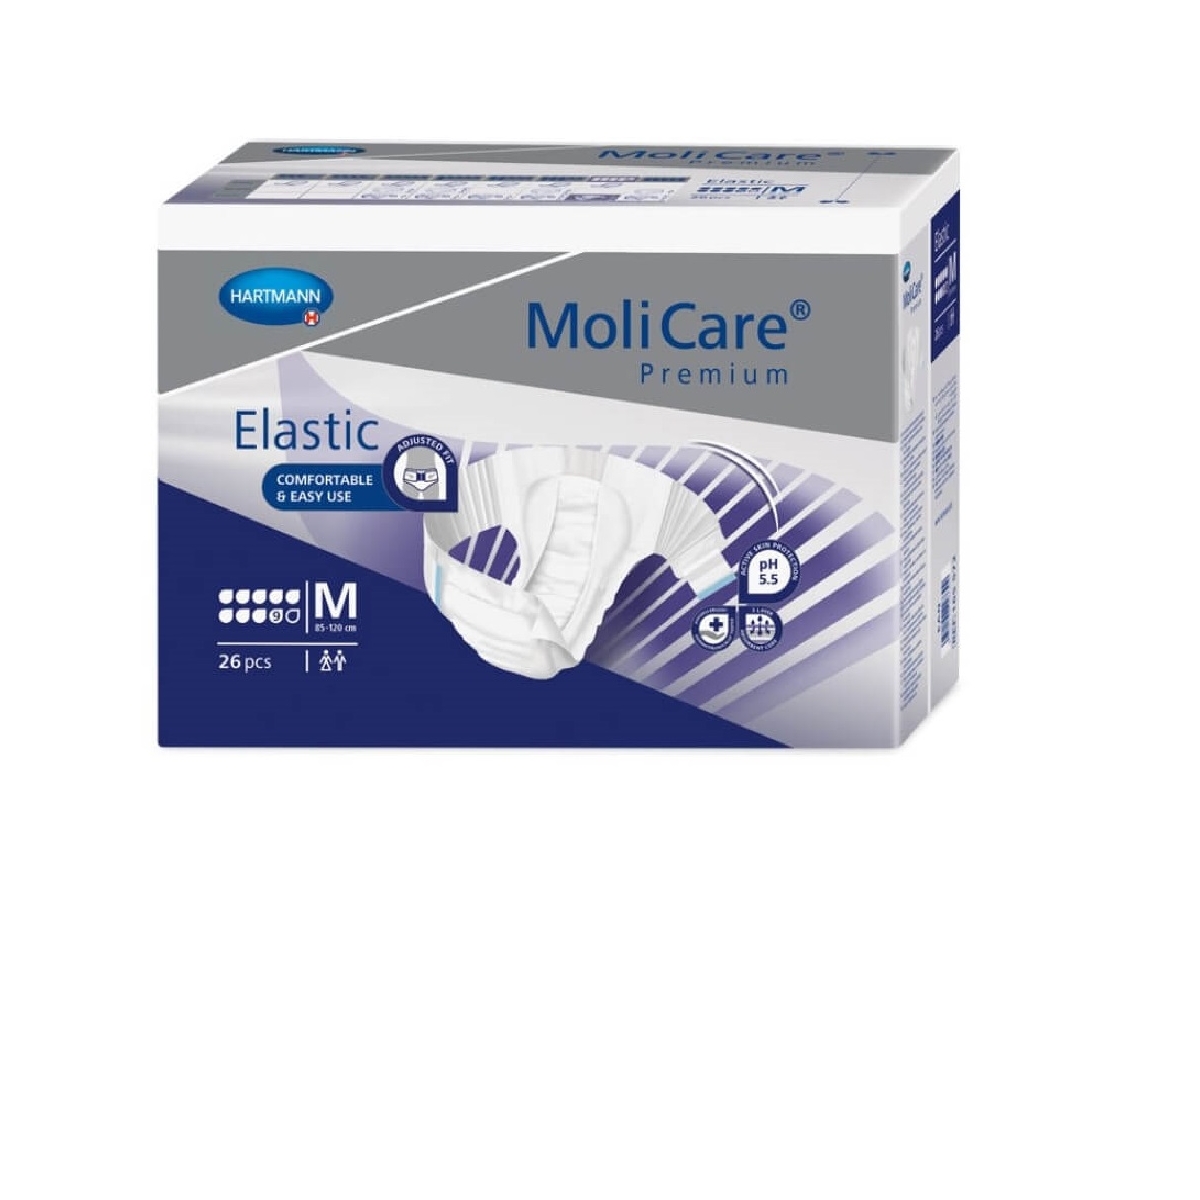 MoliCare Premium Elastic 9 M N26